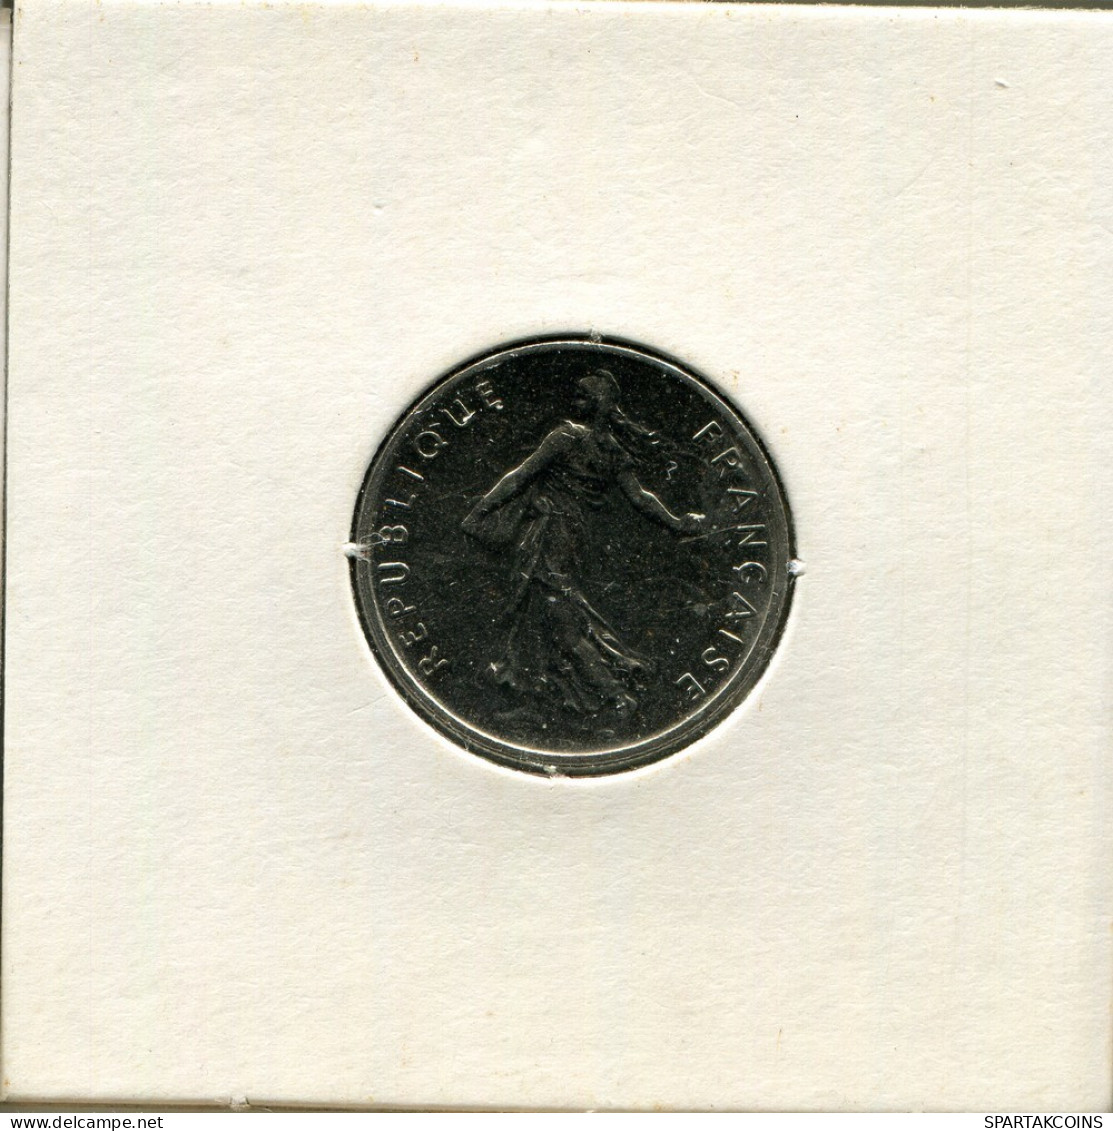 1/2 FRANC 1966 FRANCE Coin #AR339.U.A - 1/2 Franc